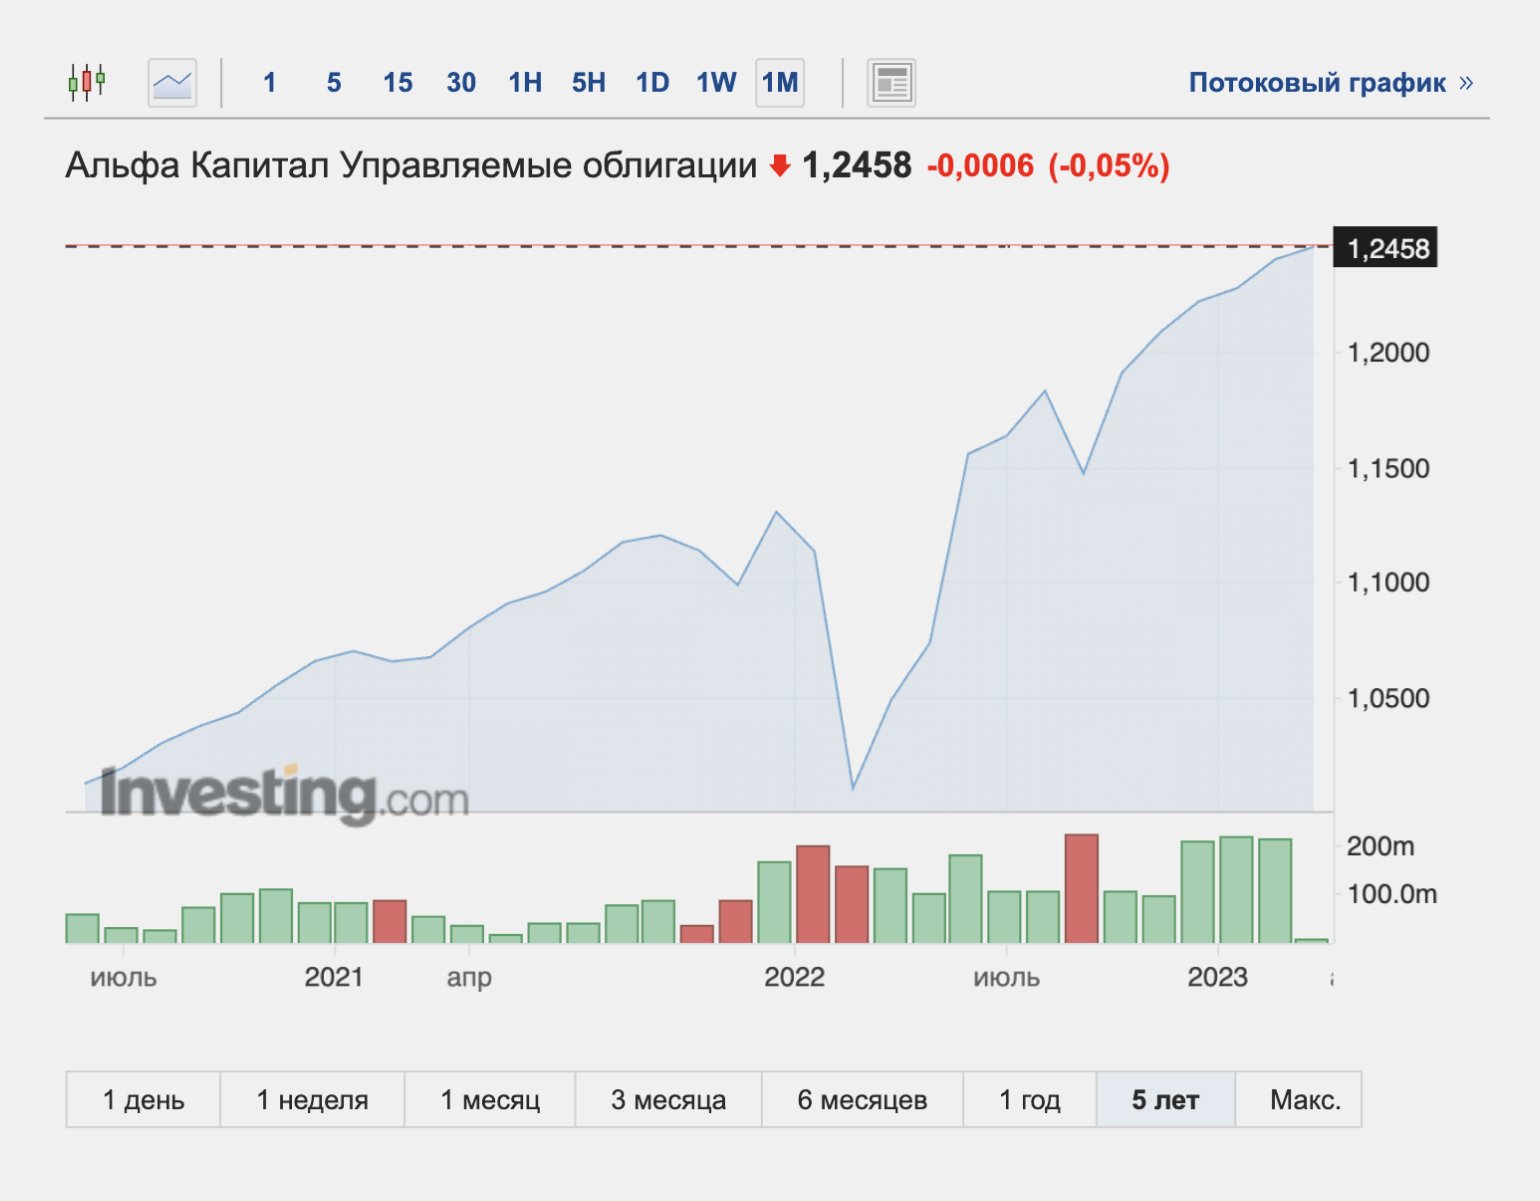 Паи альфа капитал. БПИФ управляемые облигации. Spot invest screenshot.